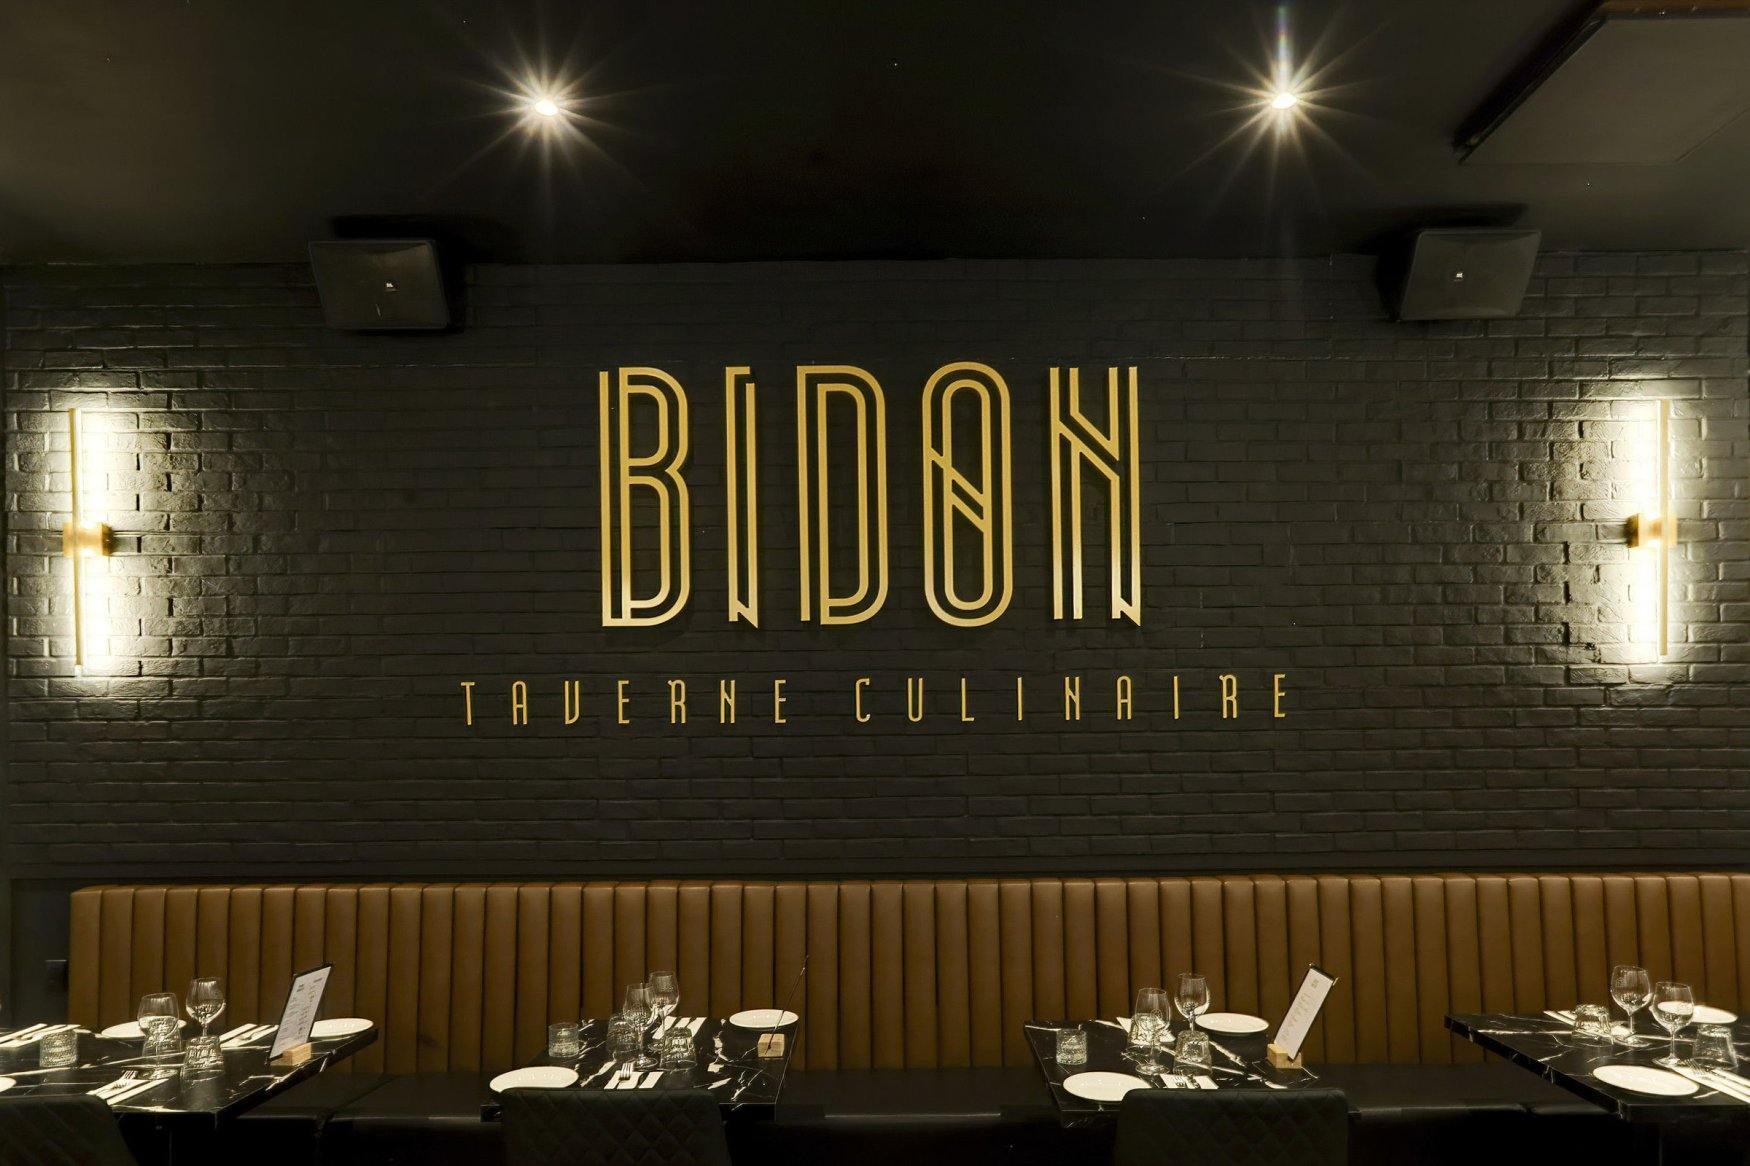 Bidon Taverne Culinaire